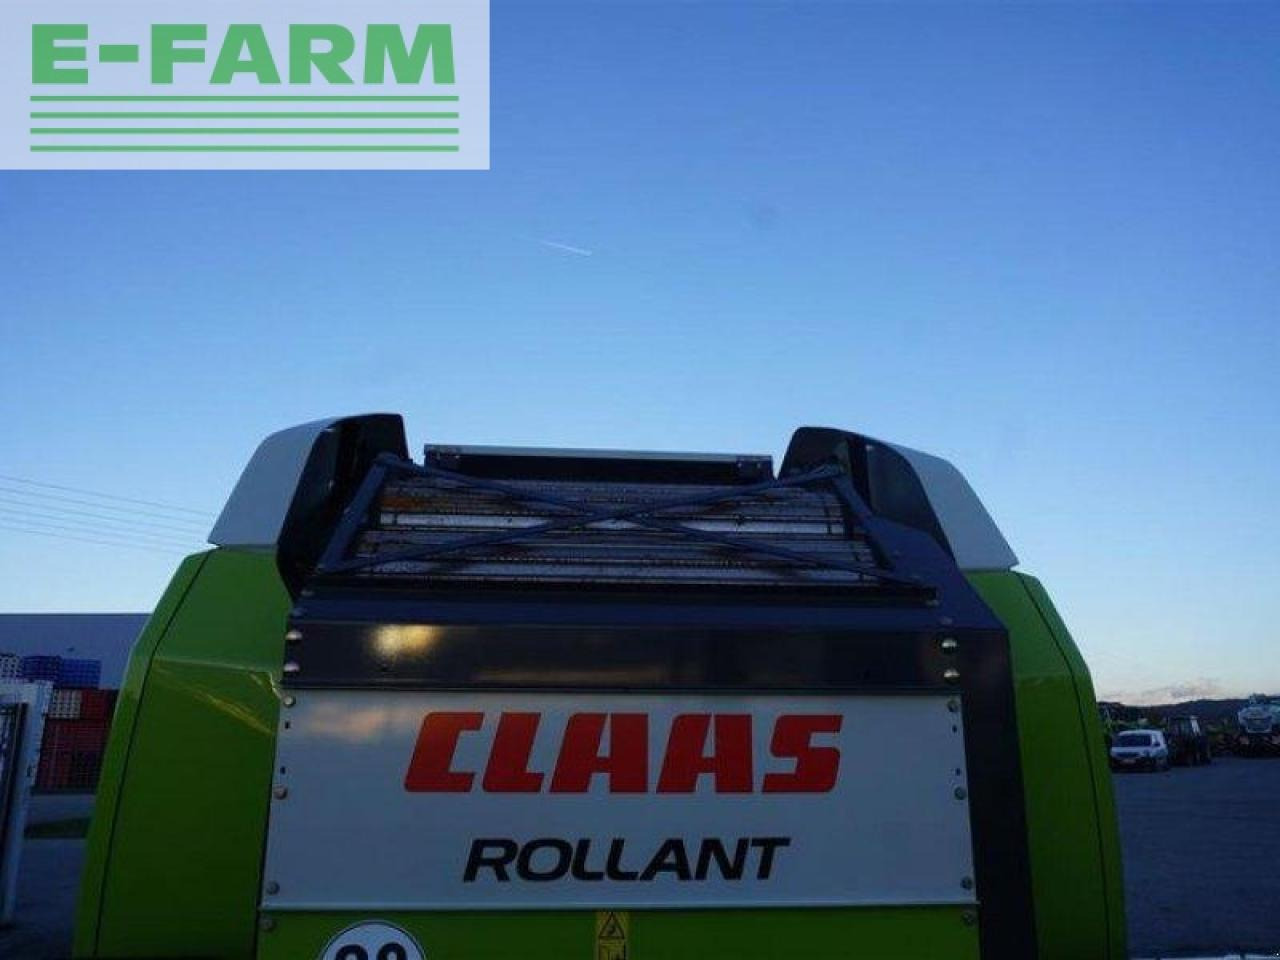 Пресс-подборщик тюковый CLAAS rollant 620 rf: фото 5